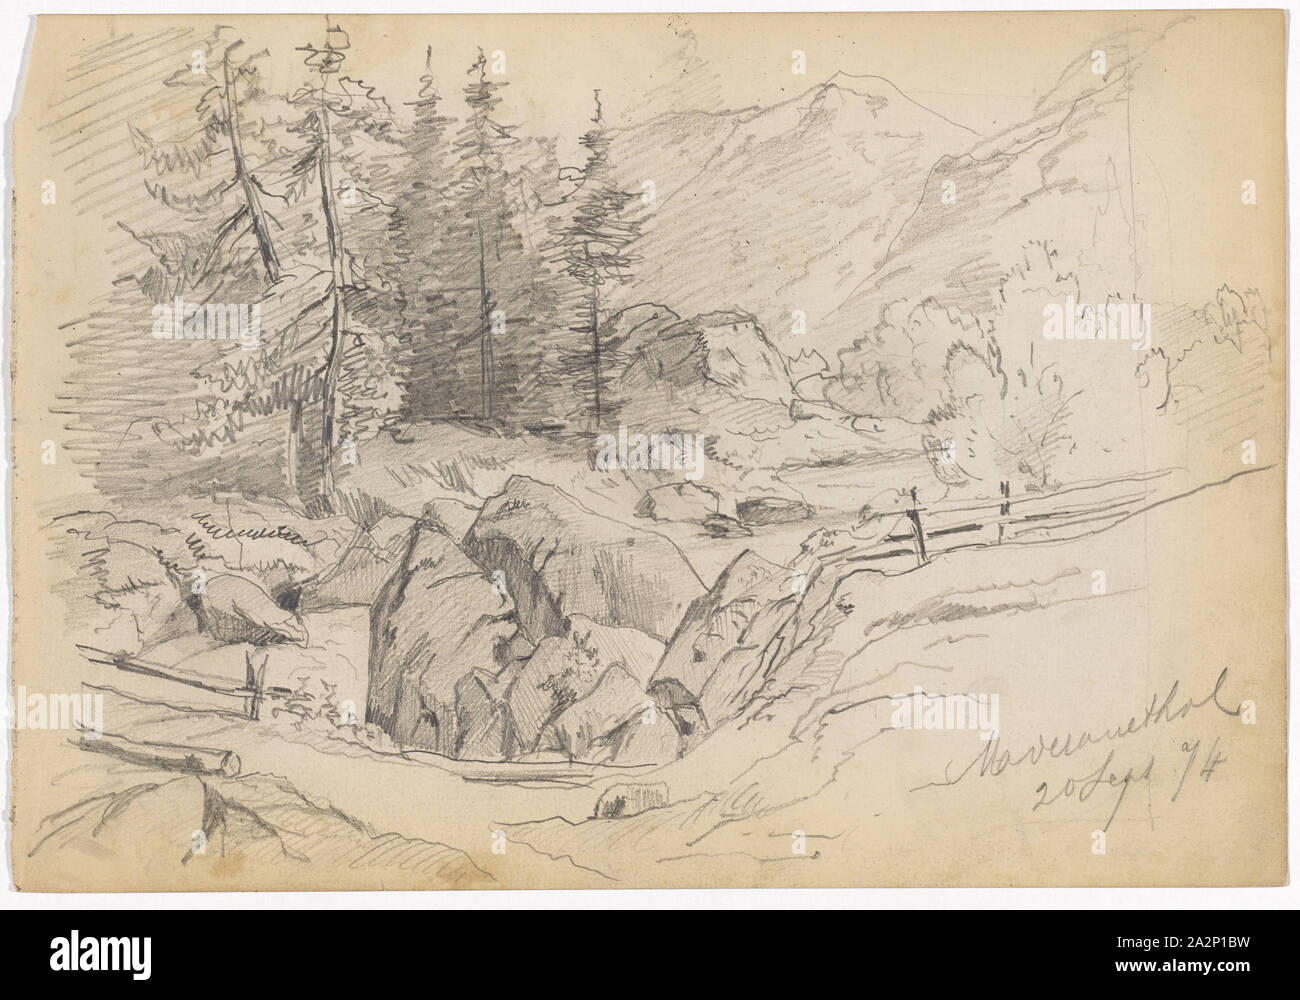 Berg Tal mit Fluss, Felsen, Tannen und eine Brücke (recto), Frau in traditioneller Kleidung ein platter (verso), 1874, Bleistift (recto), Buntstift, Bleistift (verso), Blatt: 18,9 x 27,5 cm, Rekto u., a., eingeschrieben und in Bleistift vom:... [Unleserlich], 20 Sept. 74, verso: u., M., gekennzeichnet mit Buntstift in Blau:... [Unleserlich], Paul Franz Otto, 1839 - 1927 Stockfoto